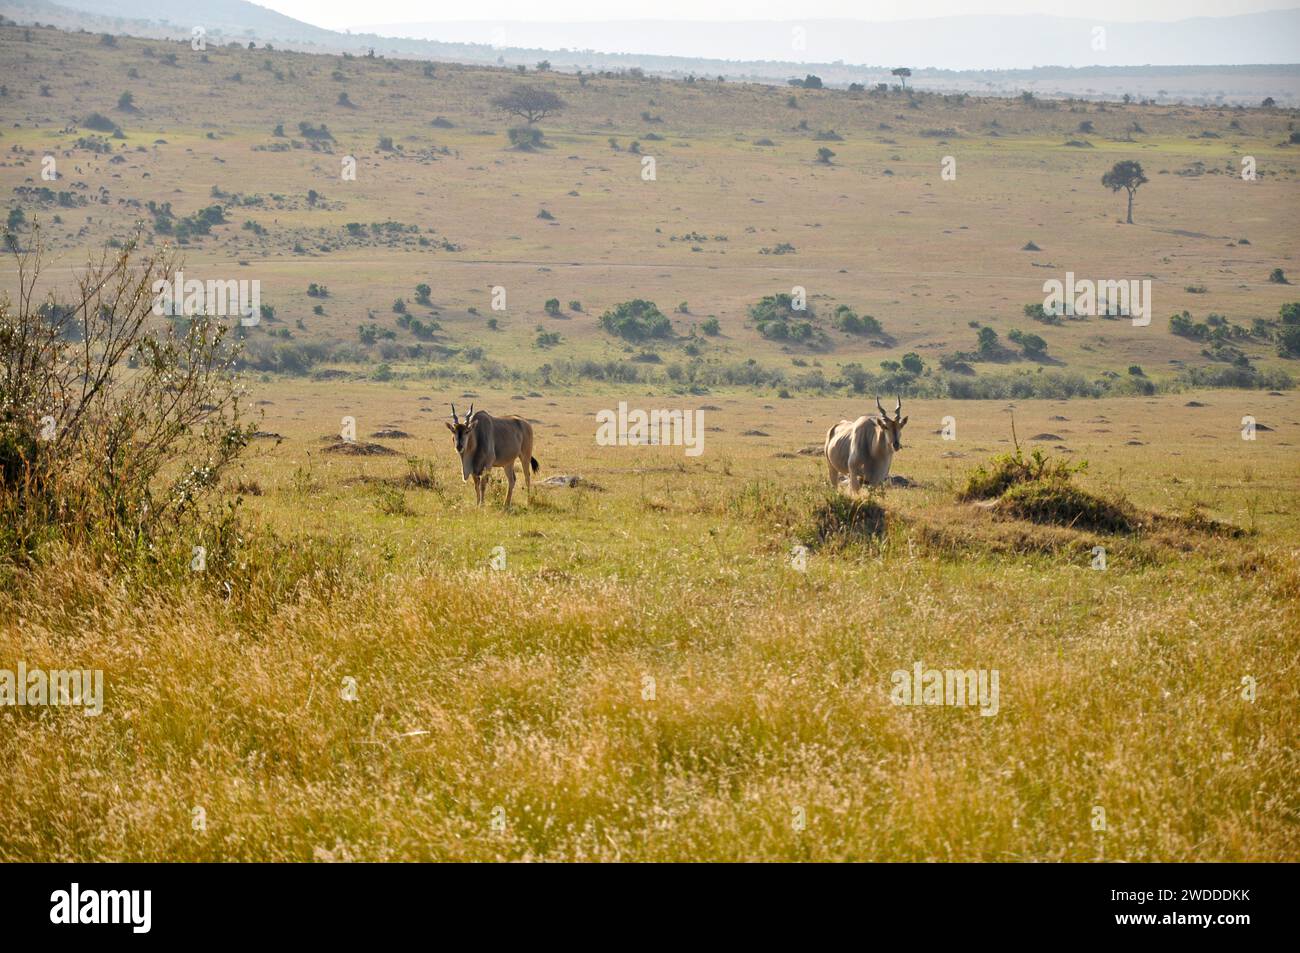 herd of giant Eland antelopes in Kenya National Park, Africa Stock Photo